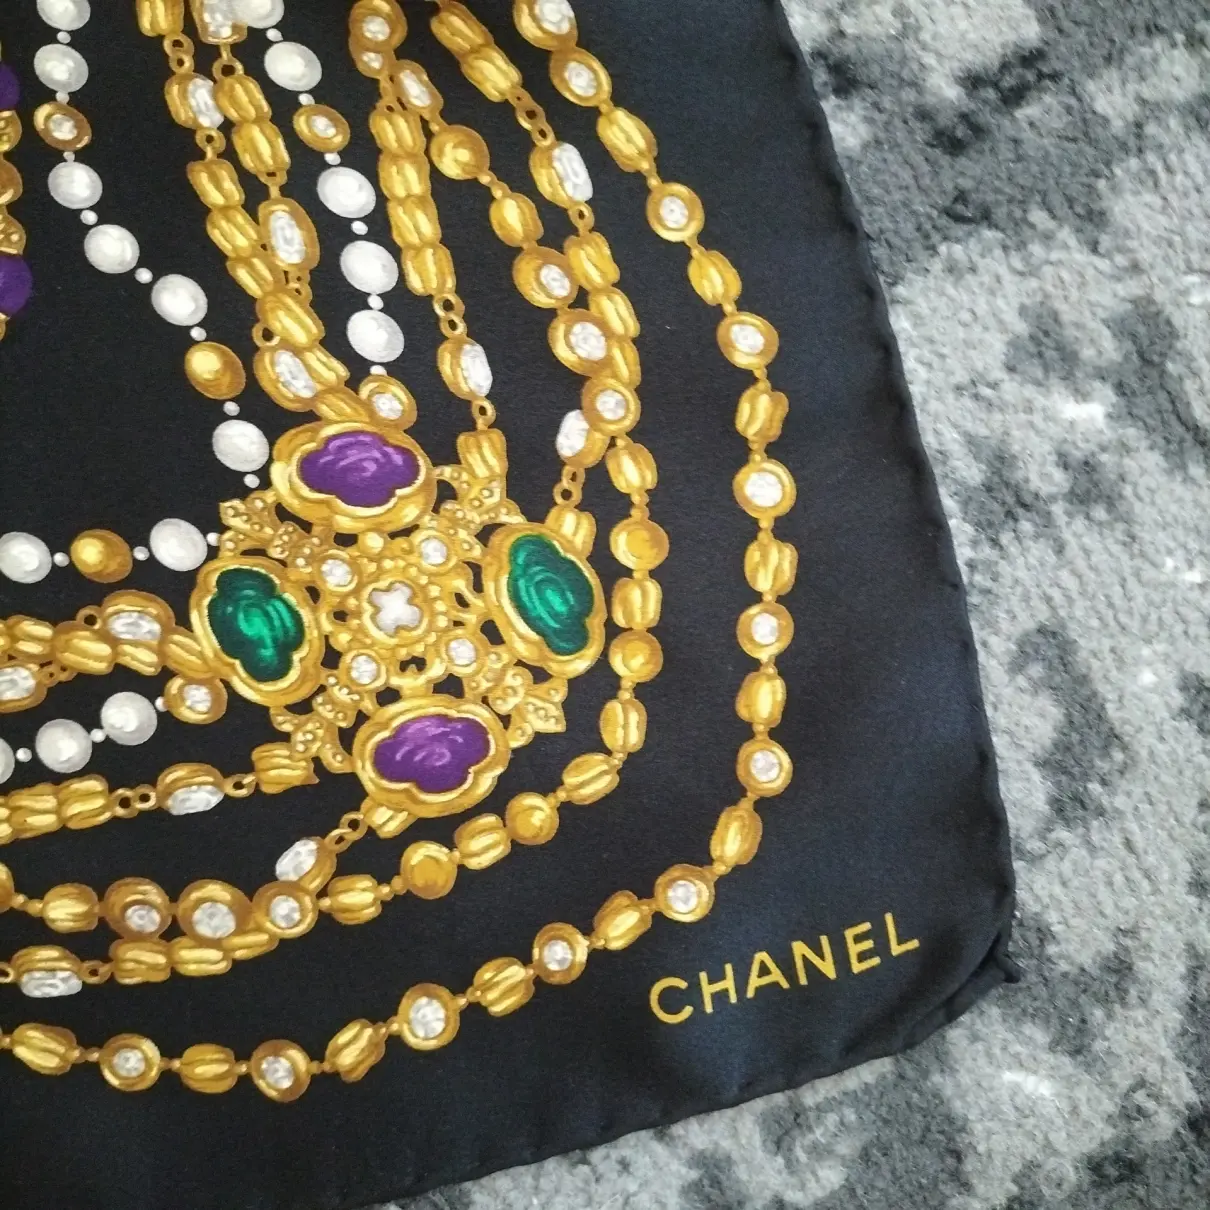 Buy Chanel Silk handkerchief online